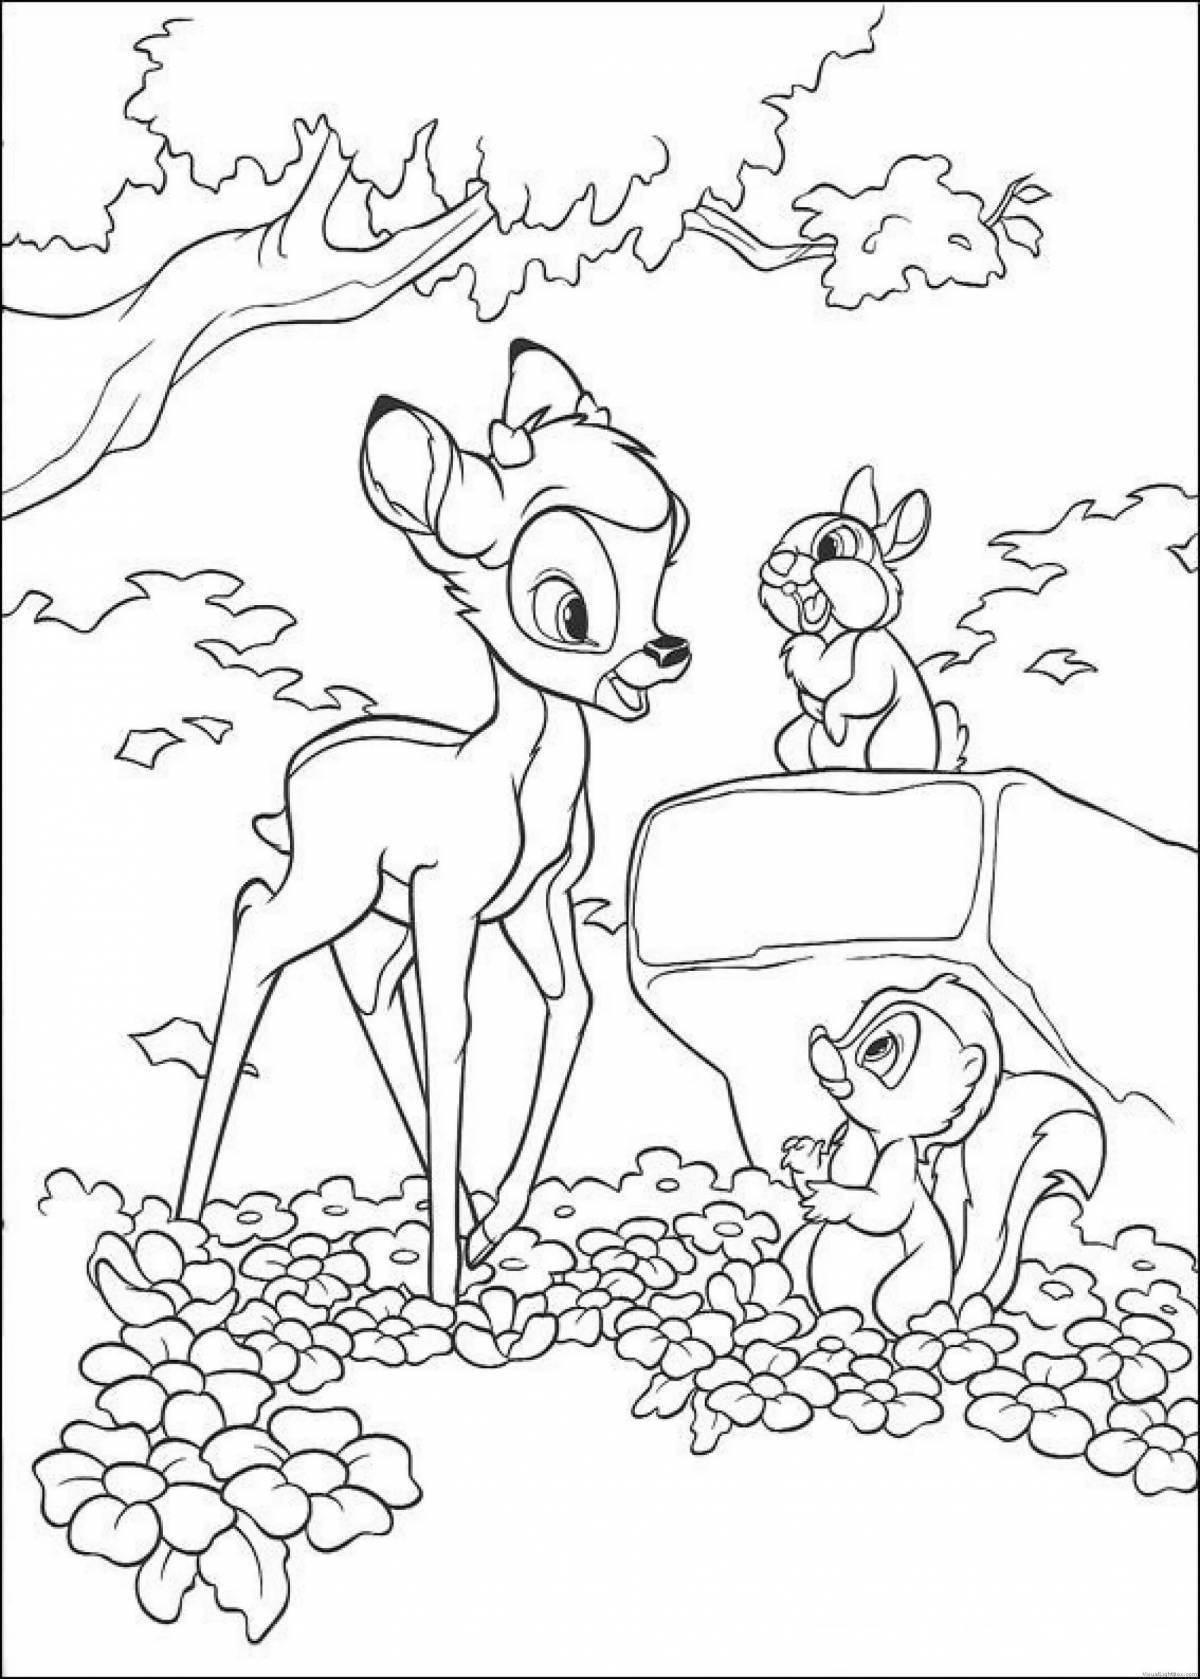 Coloring playful bambi 2